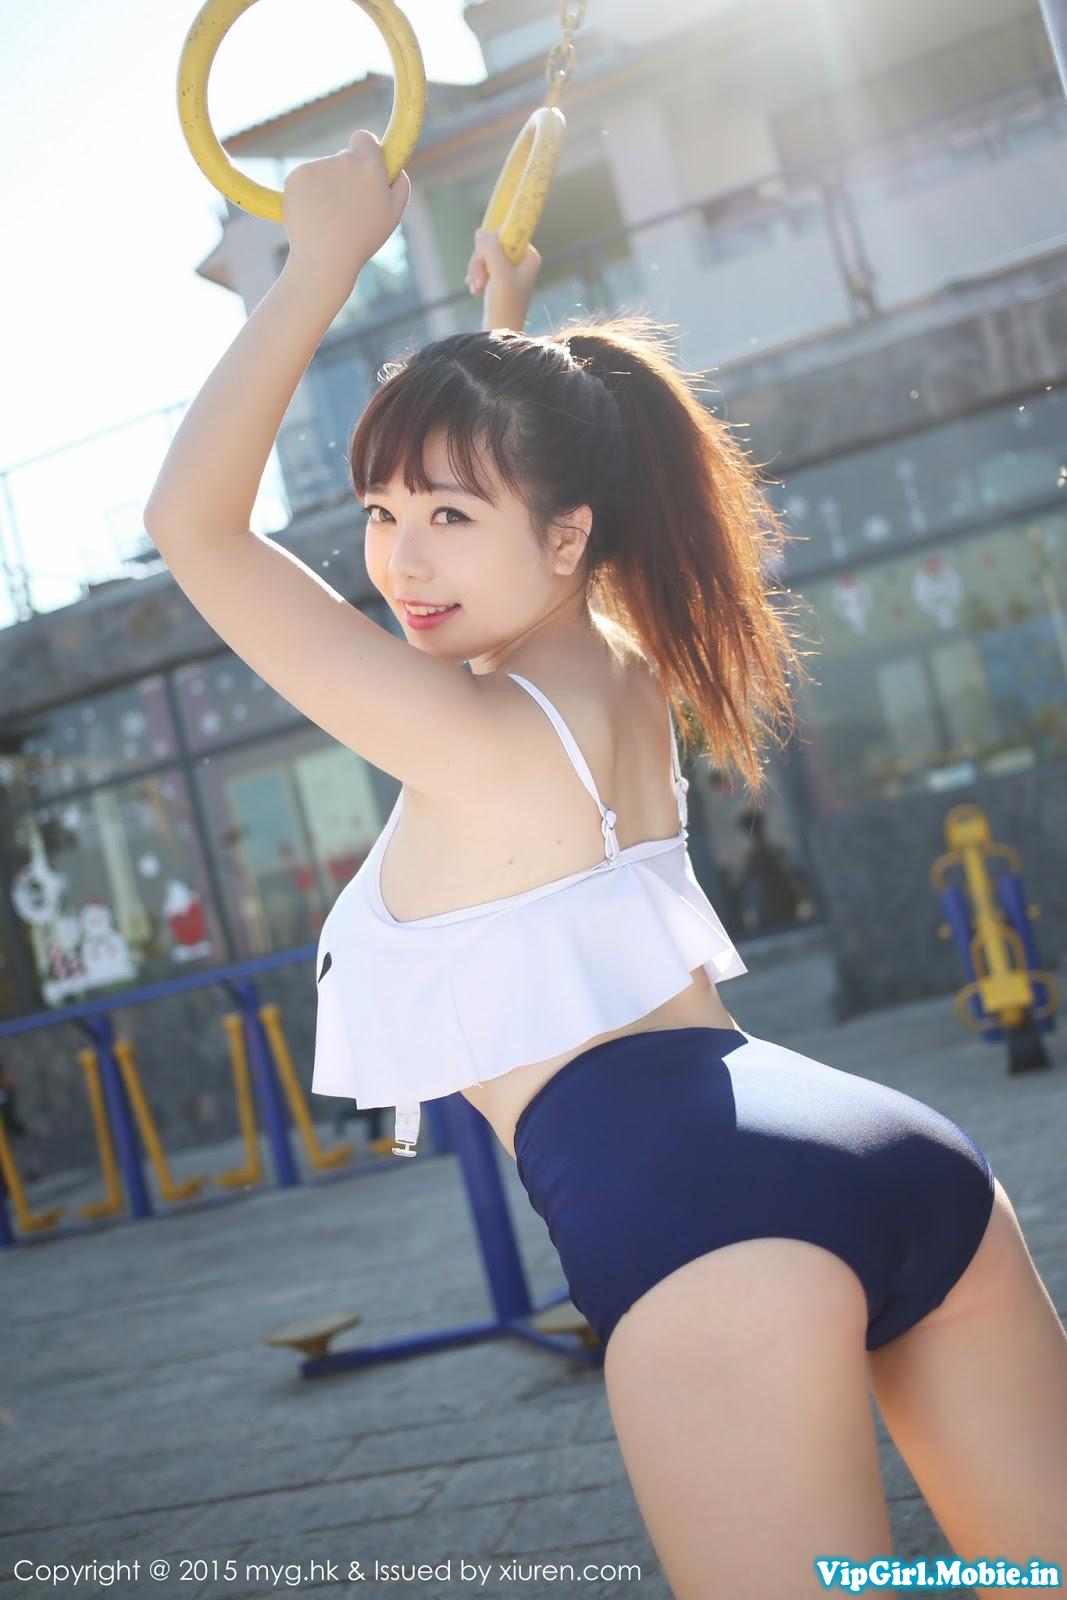 Gái Xinh Sexy Bikini Trung Quốc Ngực Khủng Mặt Siêu Dễ Thương p3